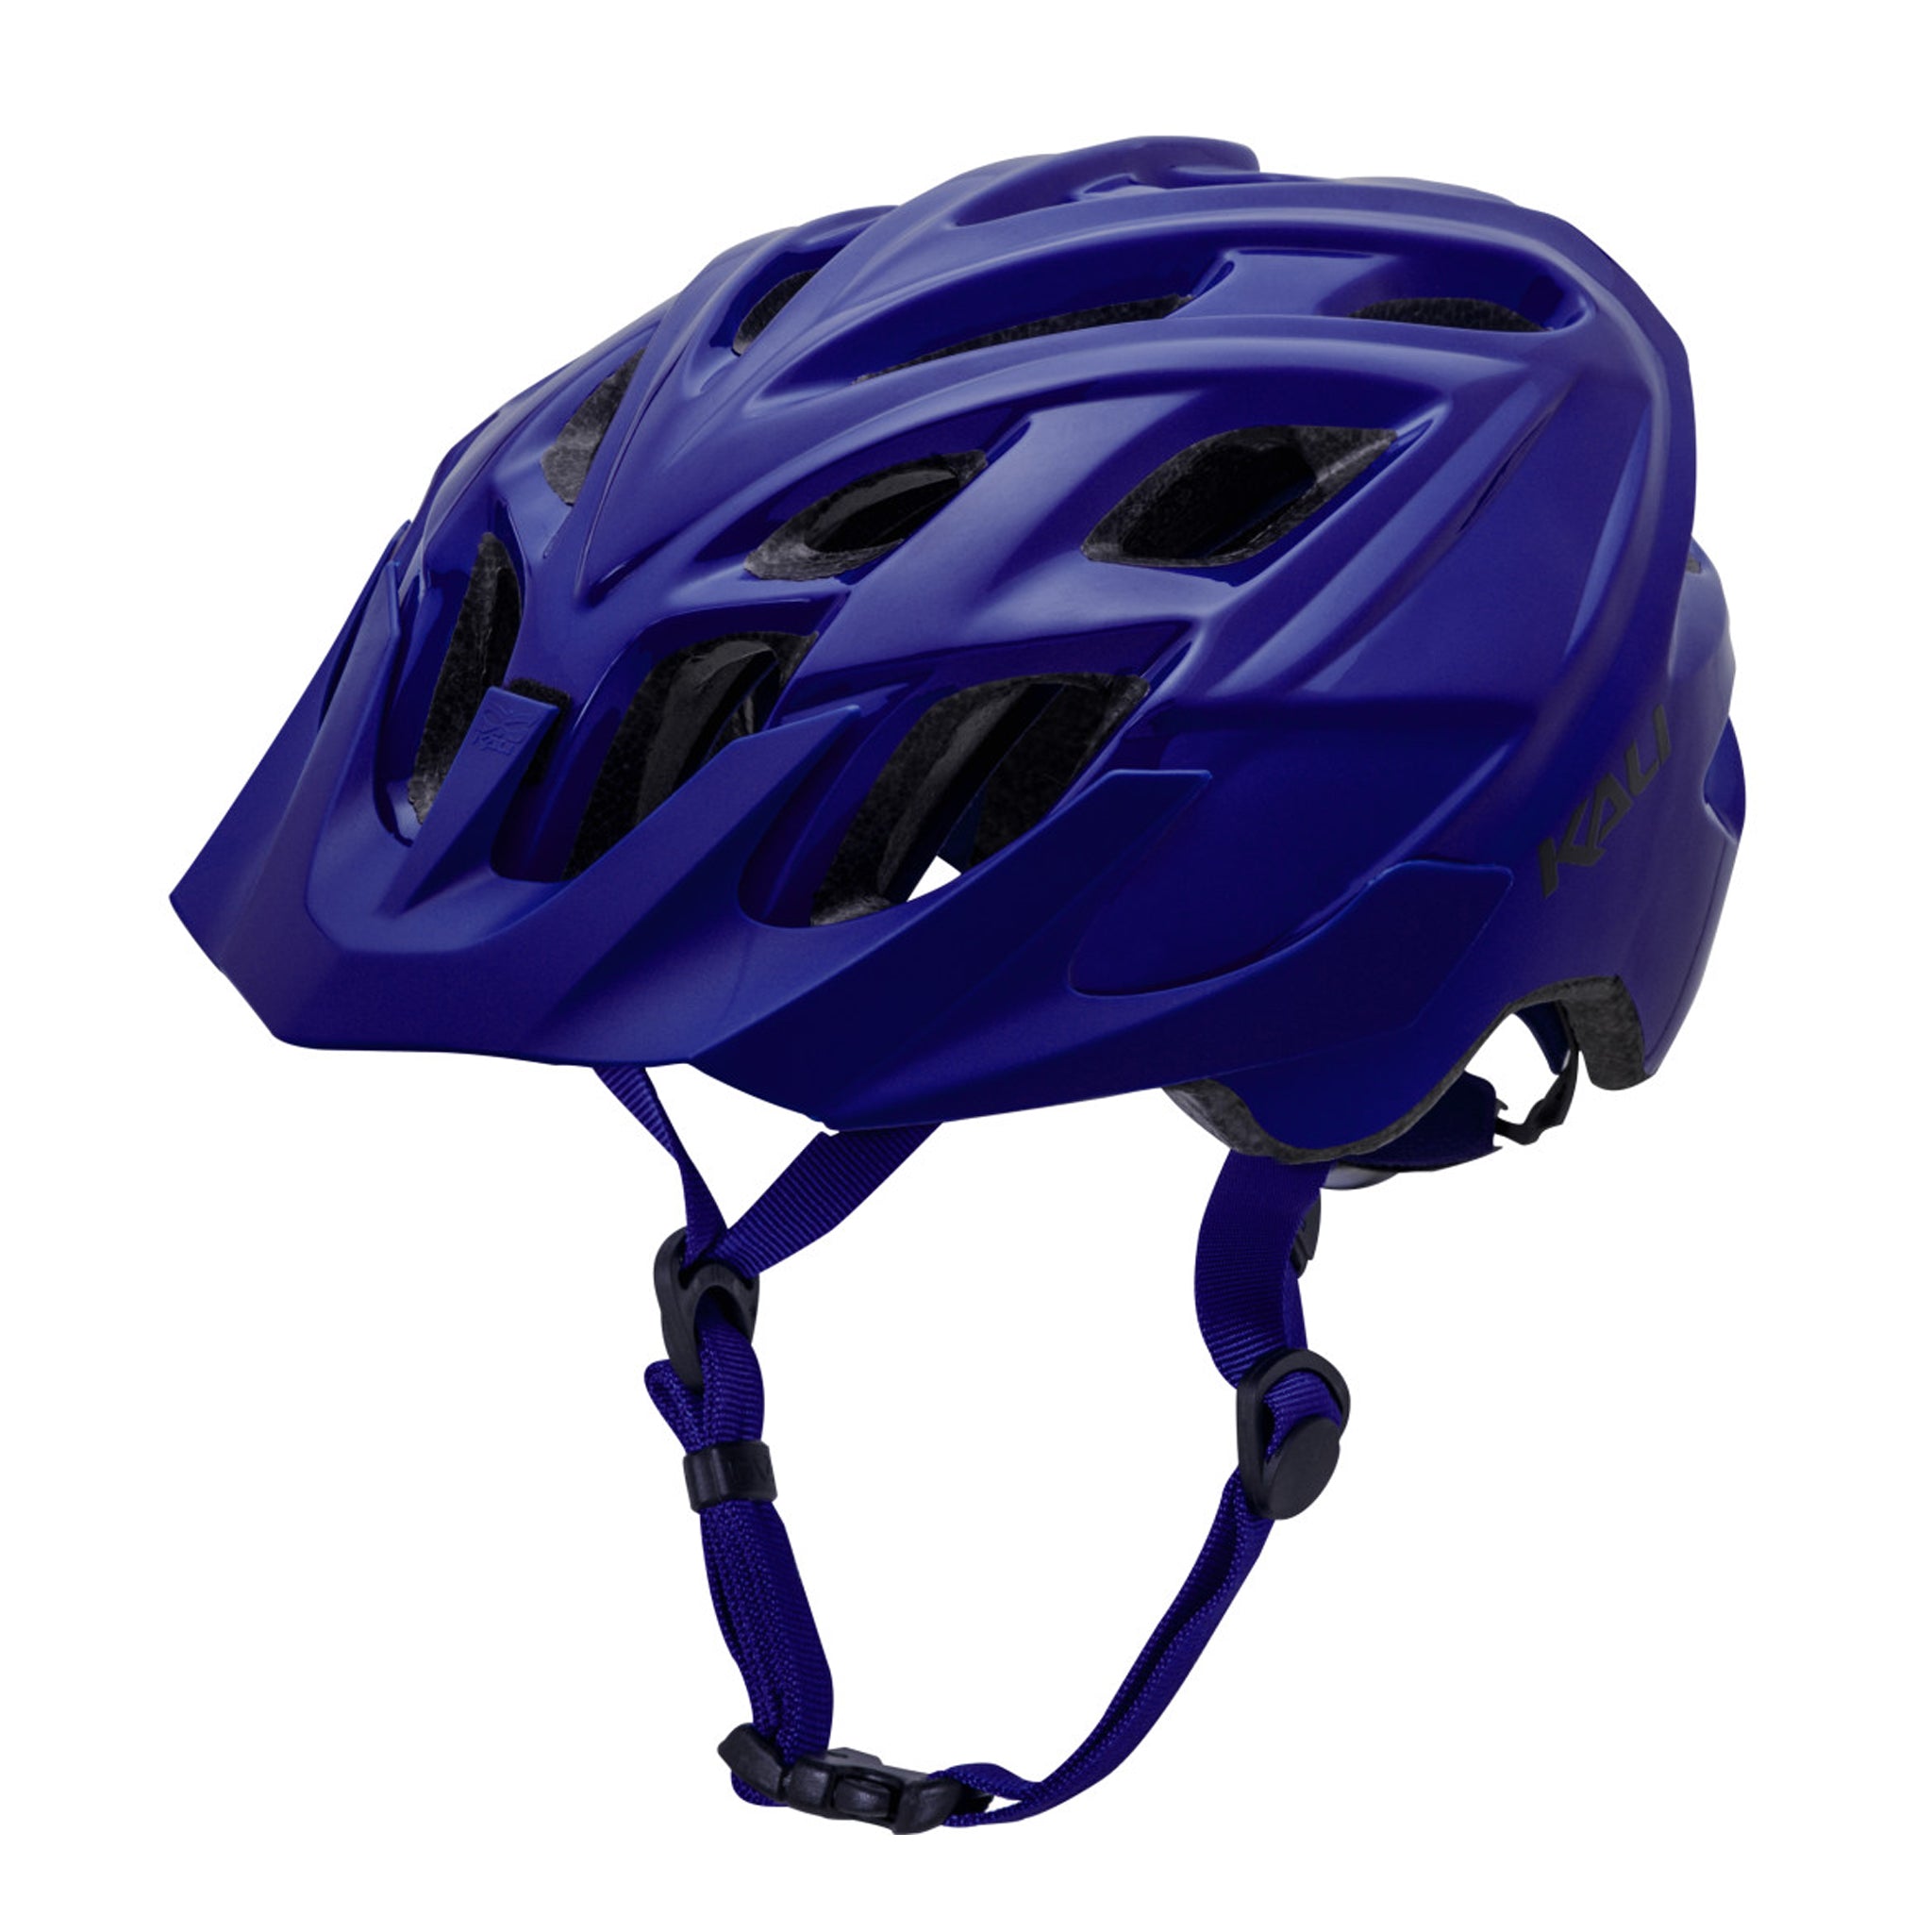 Kali Chakra Solo Trail Helmet Large/X-Large Blue